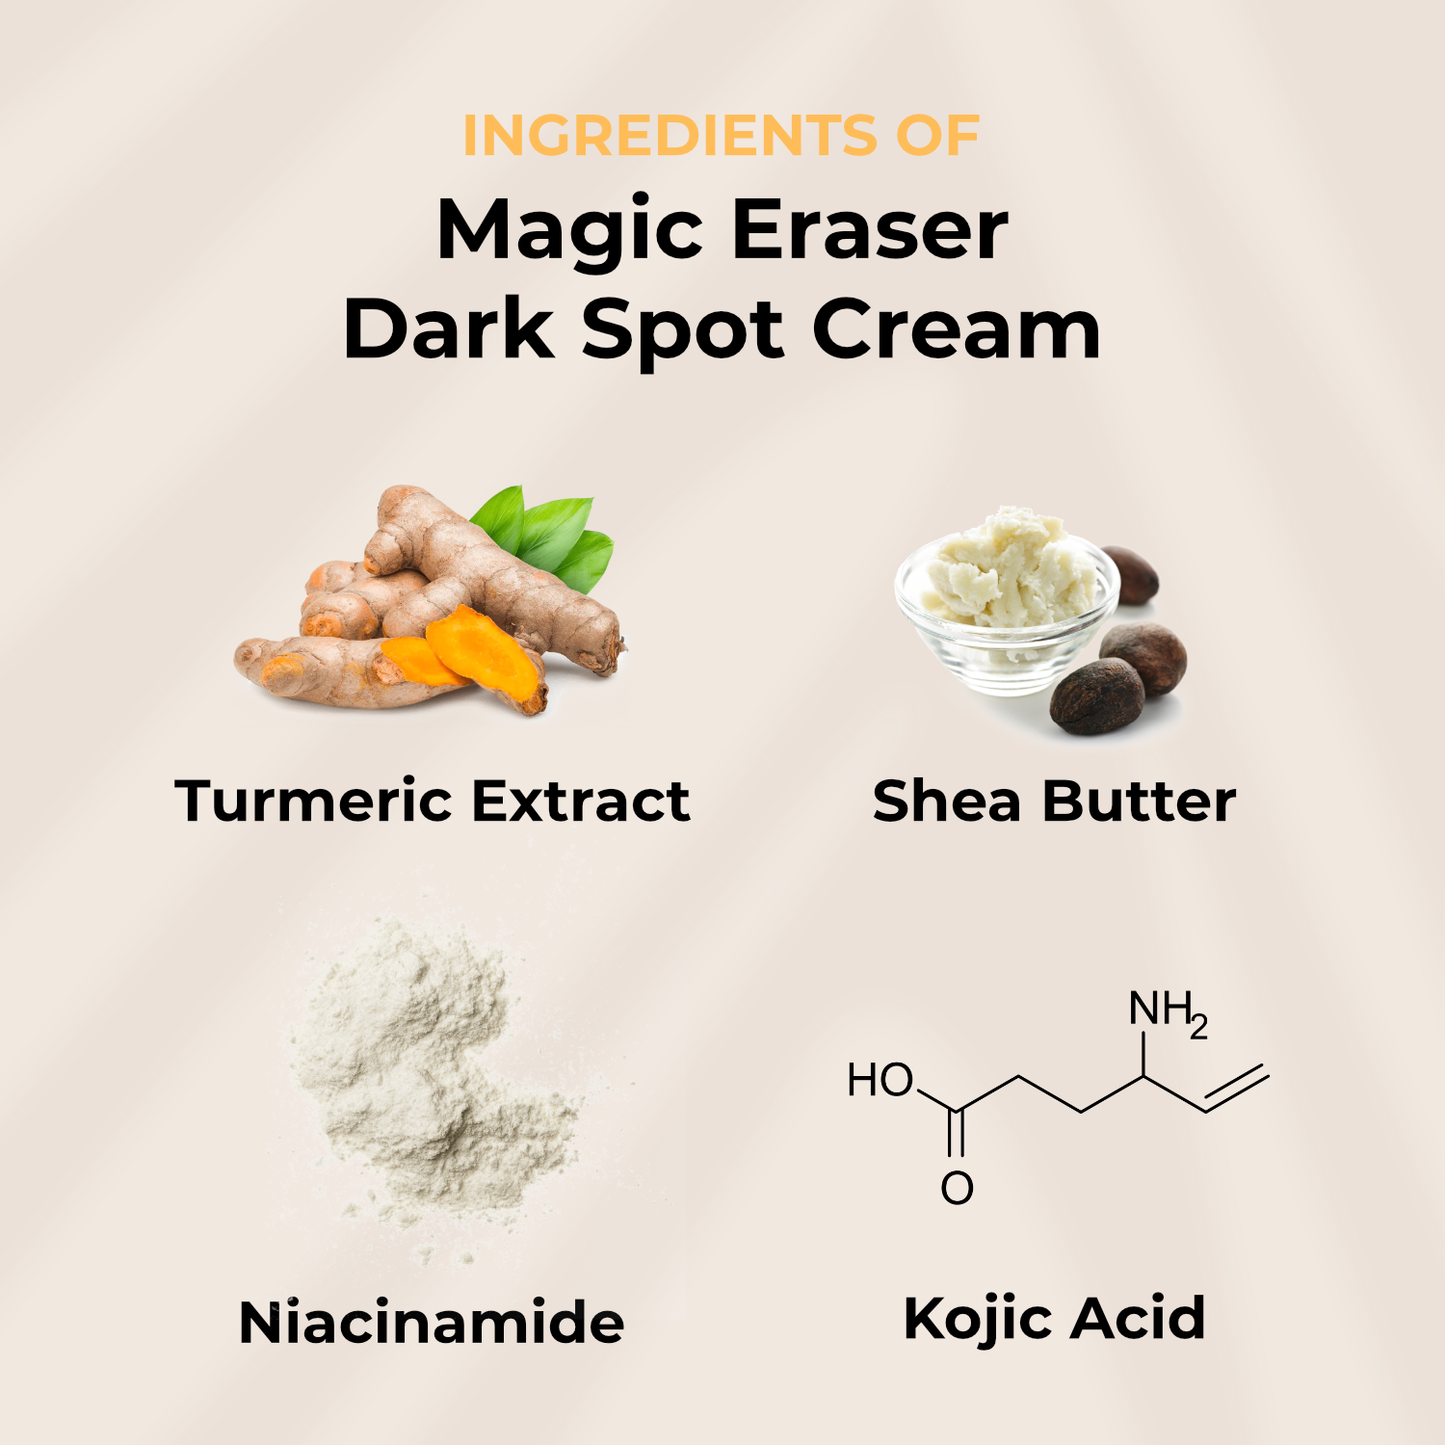 Magic Eraser Dark Spot Cream